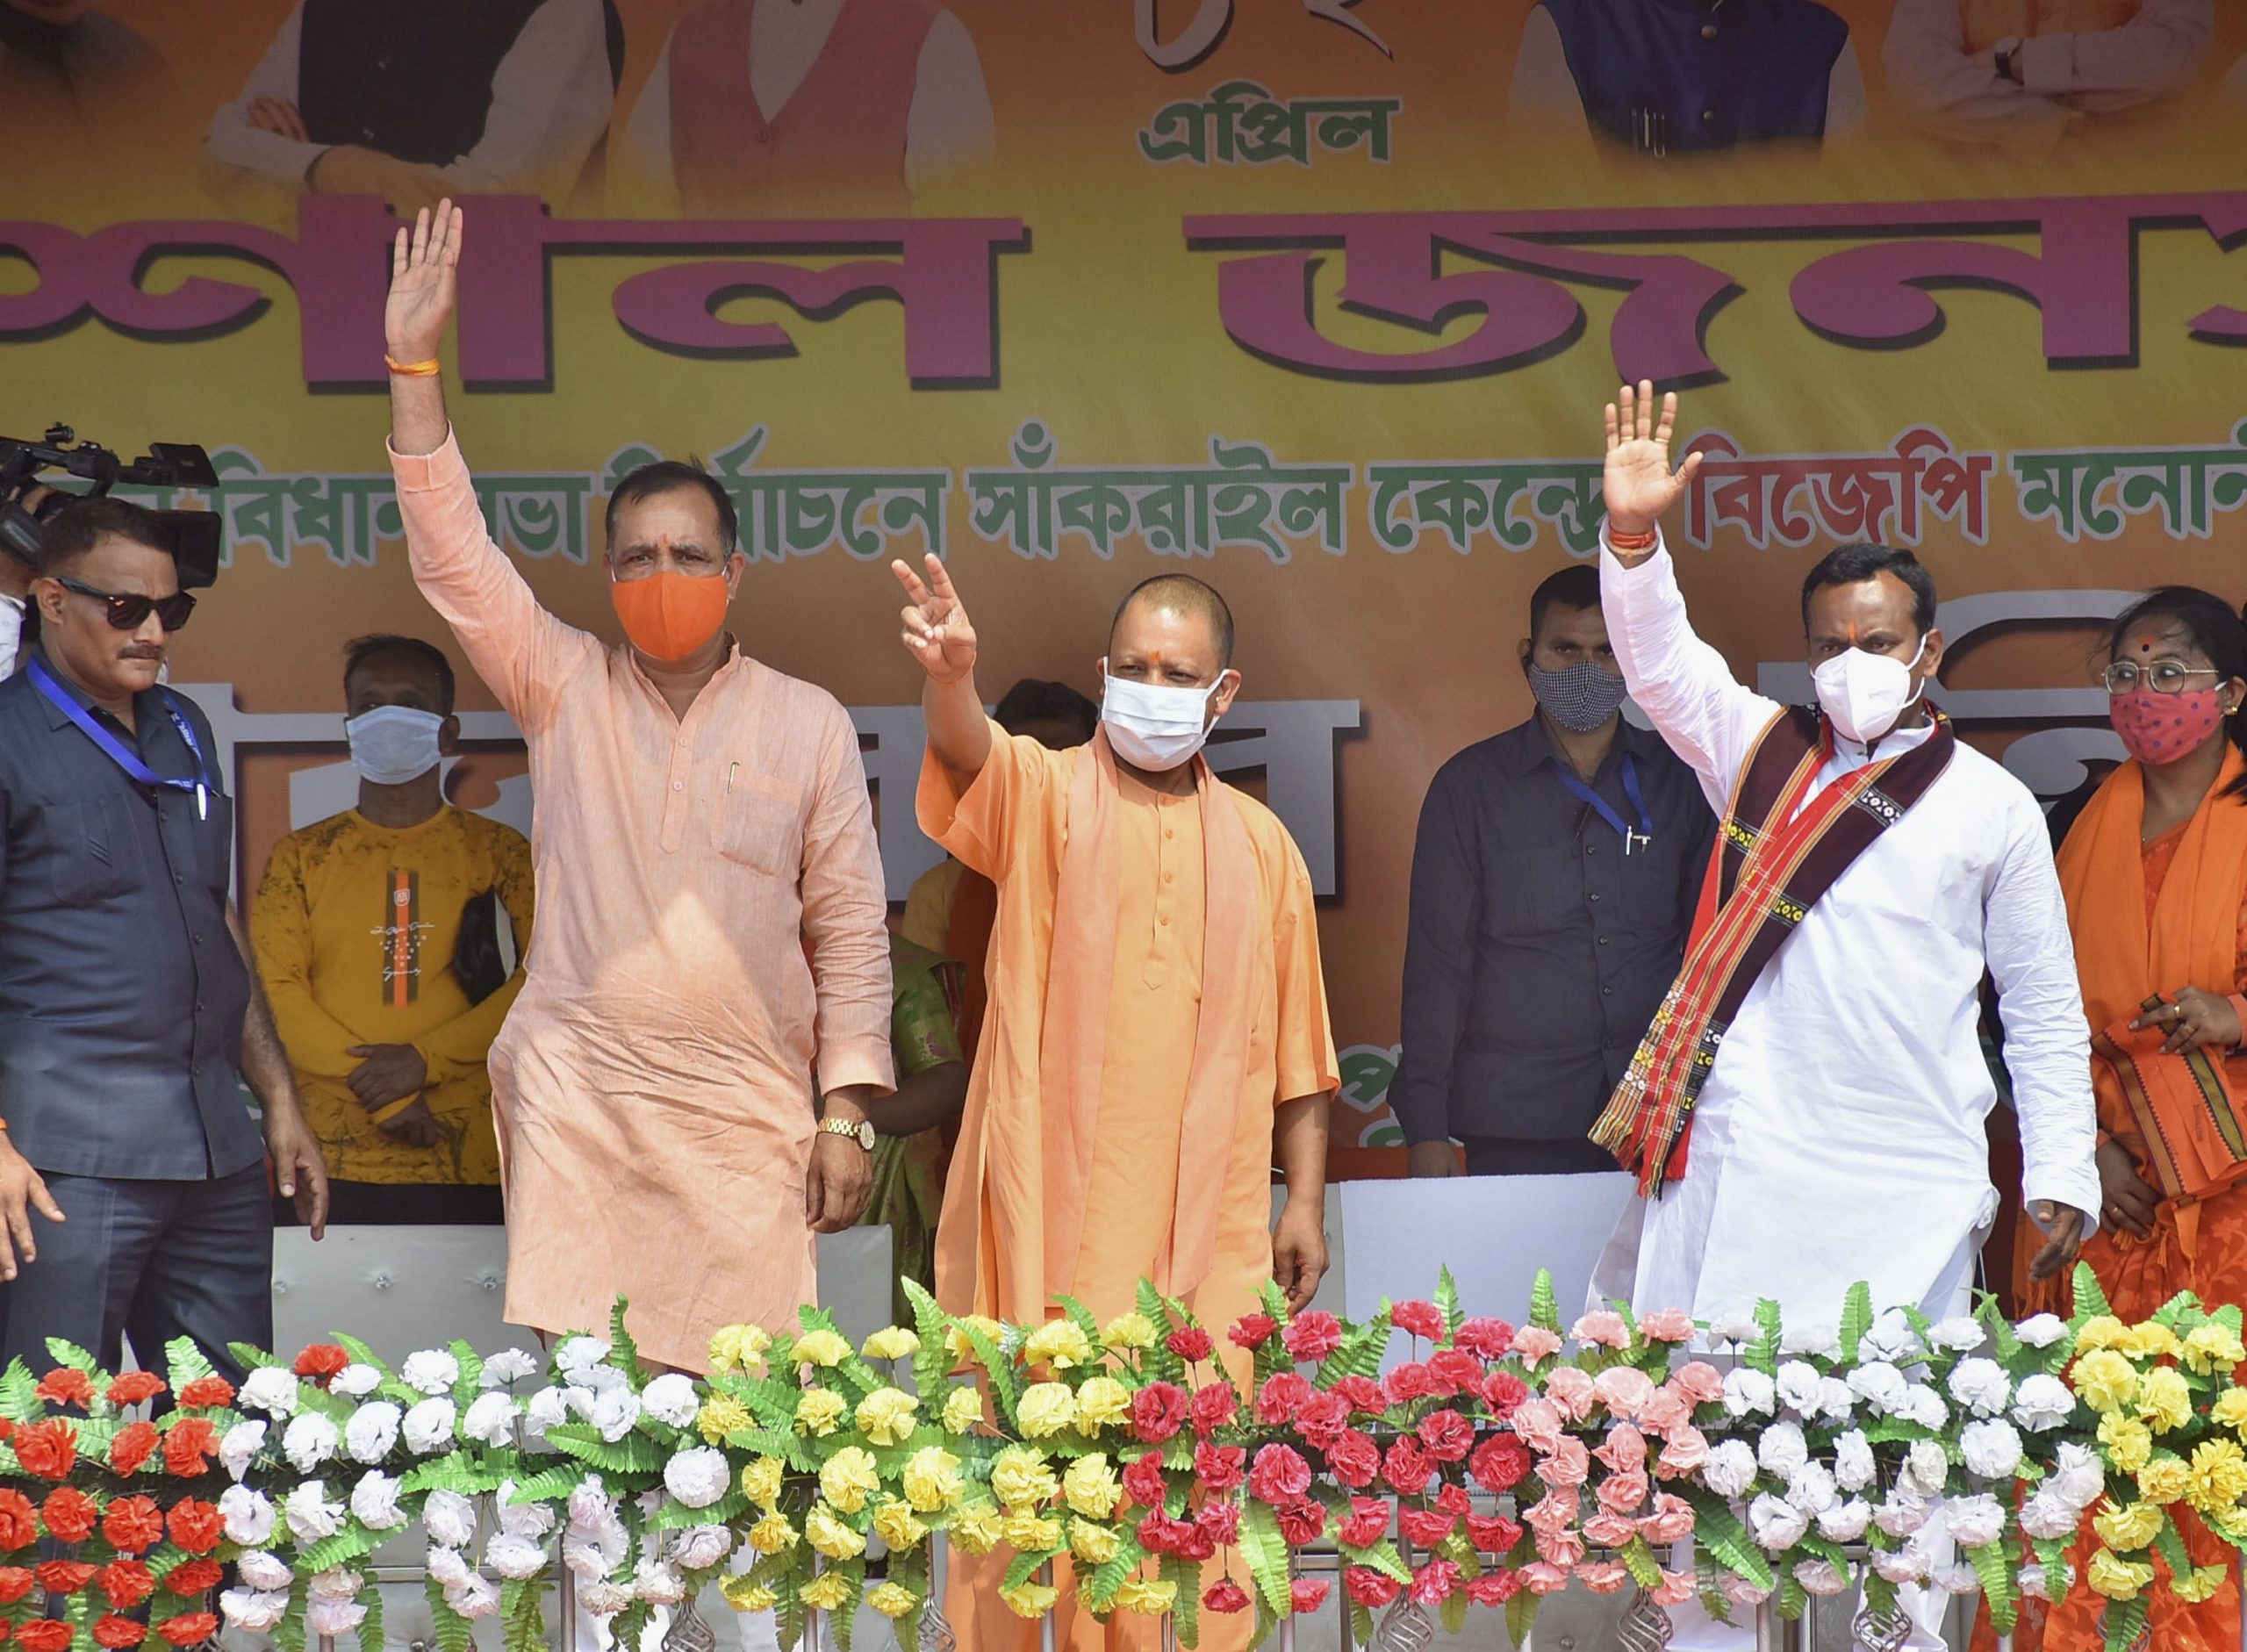 No ‘paribartan’ in West Bengal under Trinamool Congress: Yogi Adityanath